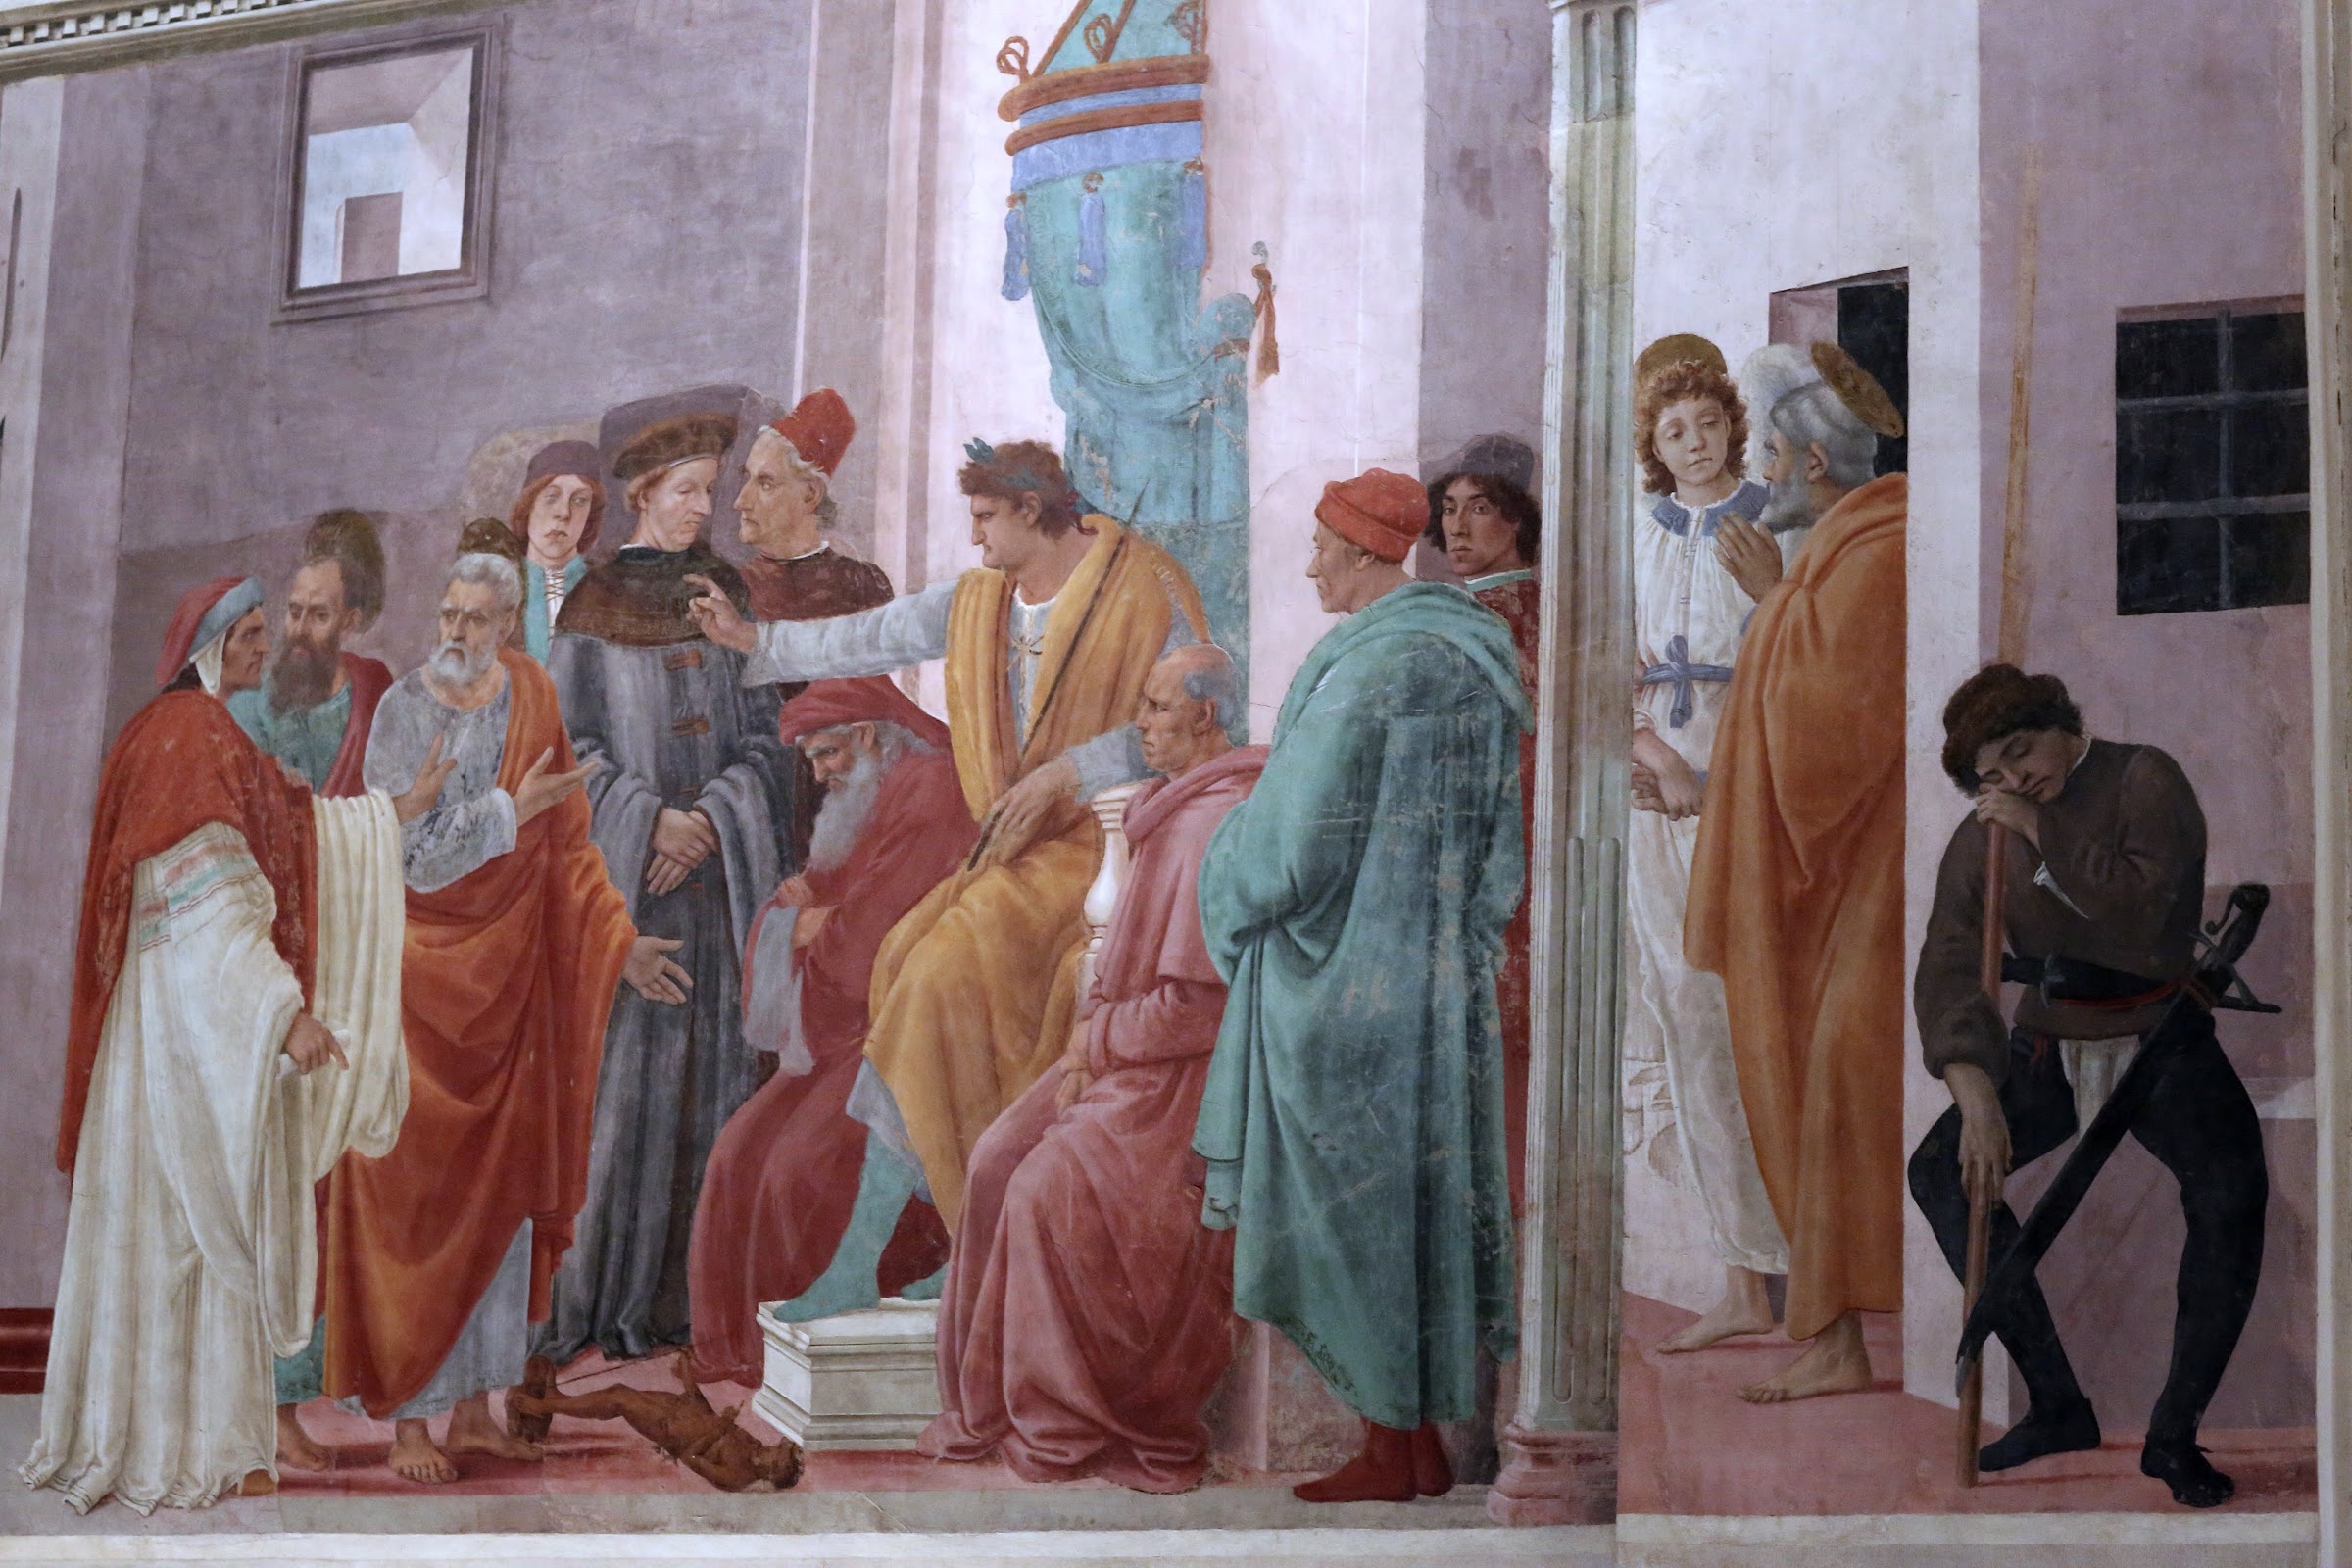 Filippino Lippi, Disputa di Simon Mago e San Pietro liberato dal carcere, 1481-82, Cappella Brancacci, Santa Maria del Carmine, Firenze